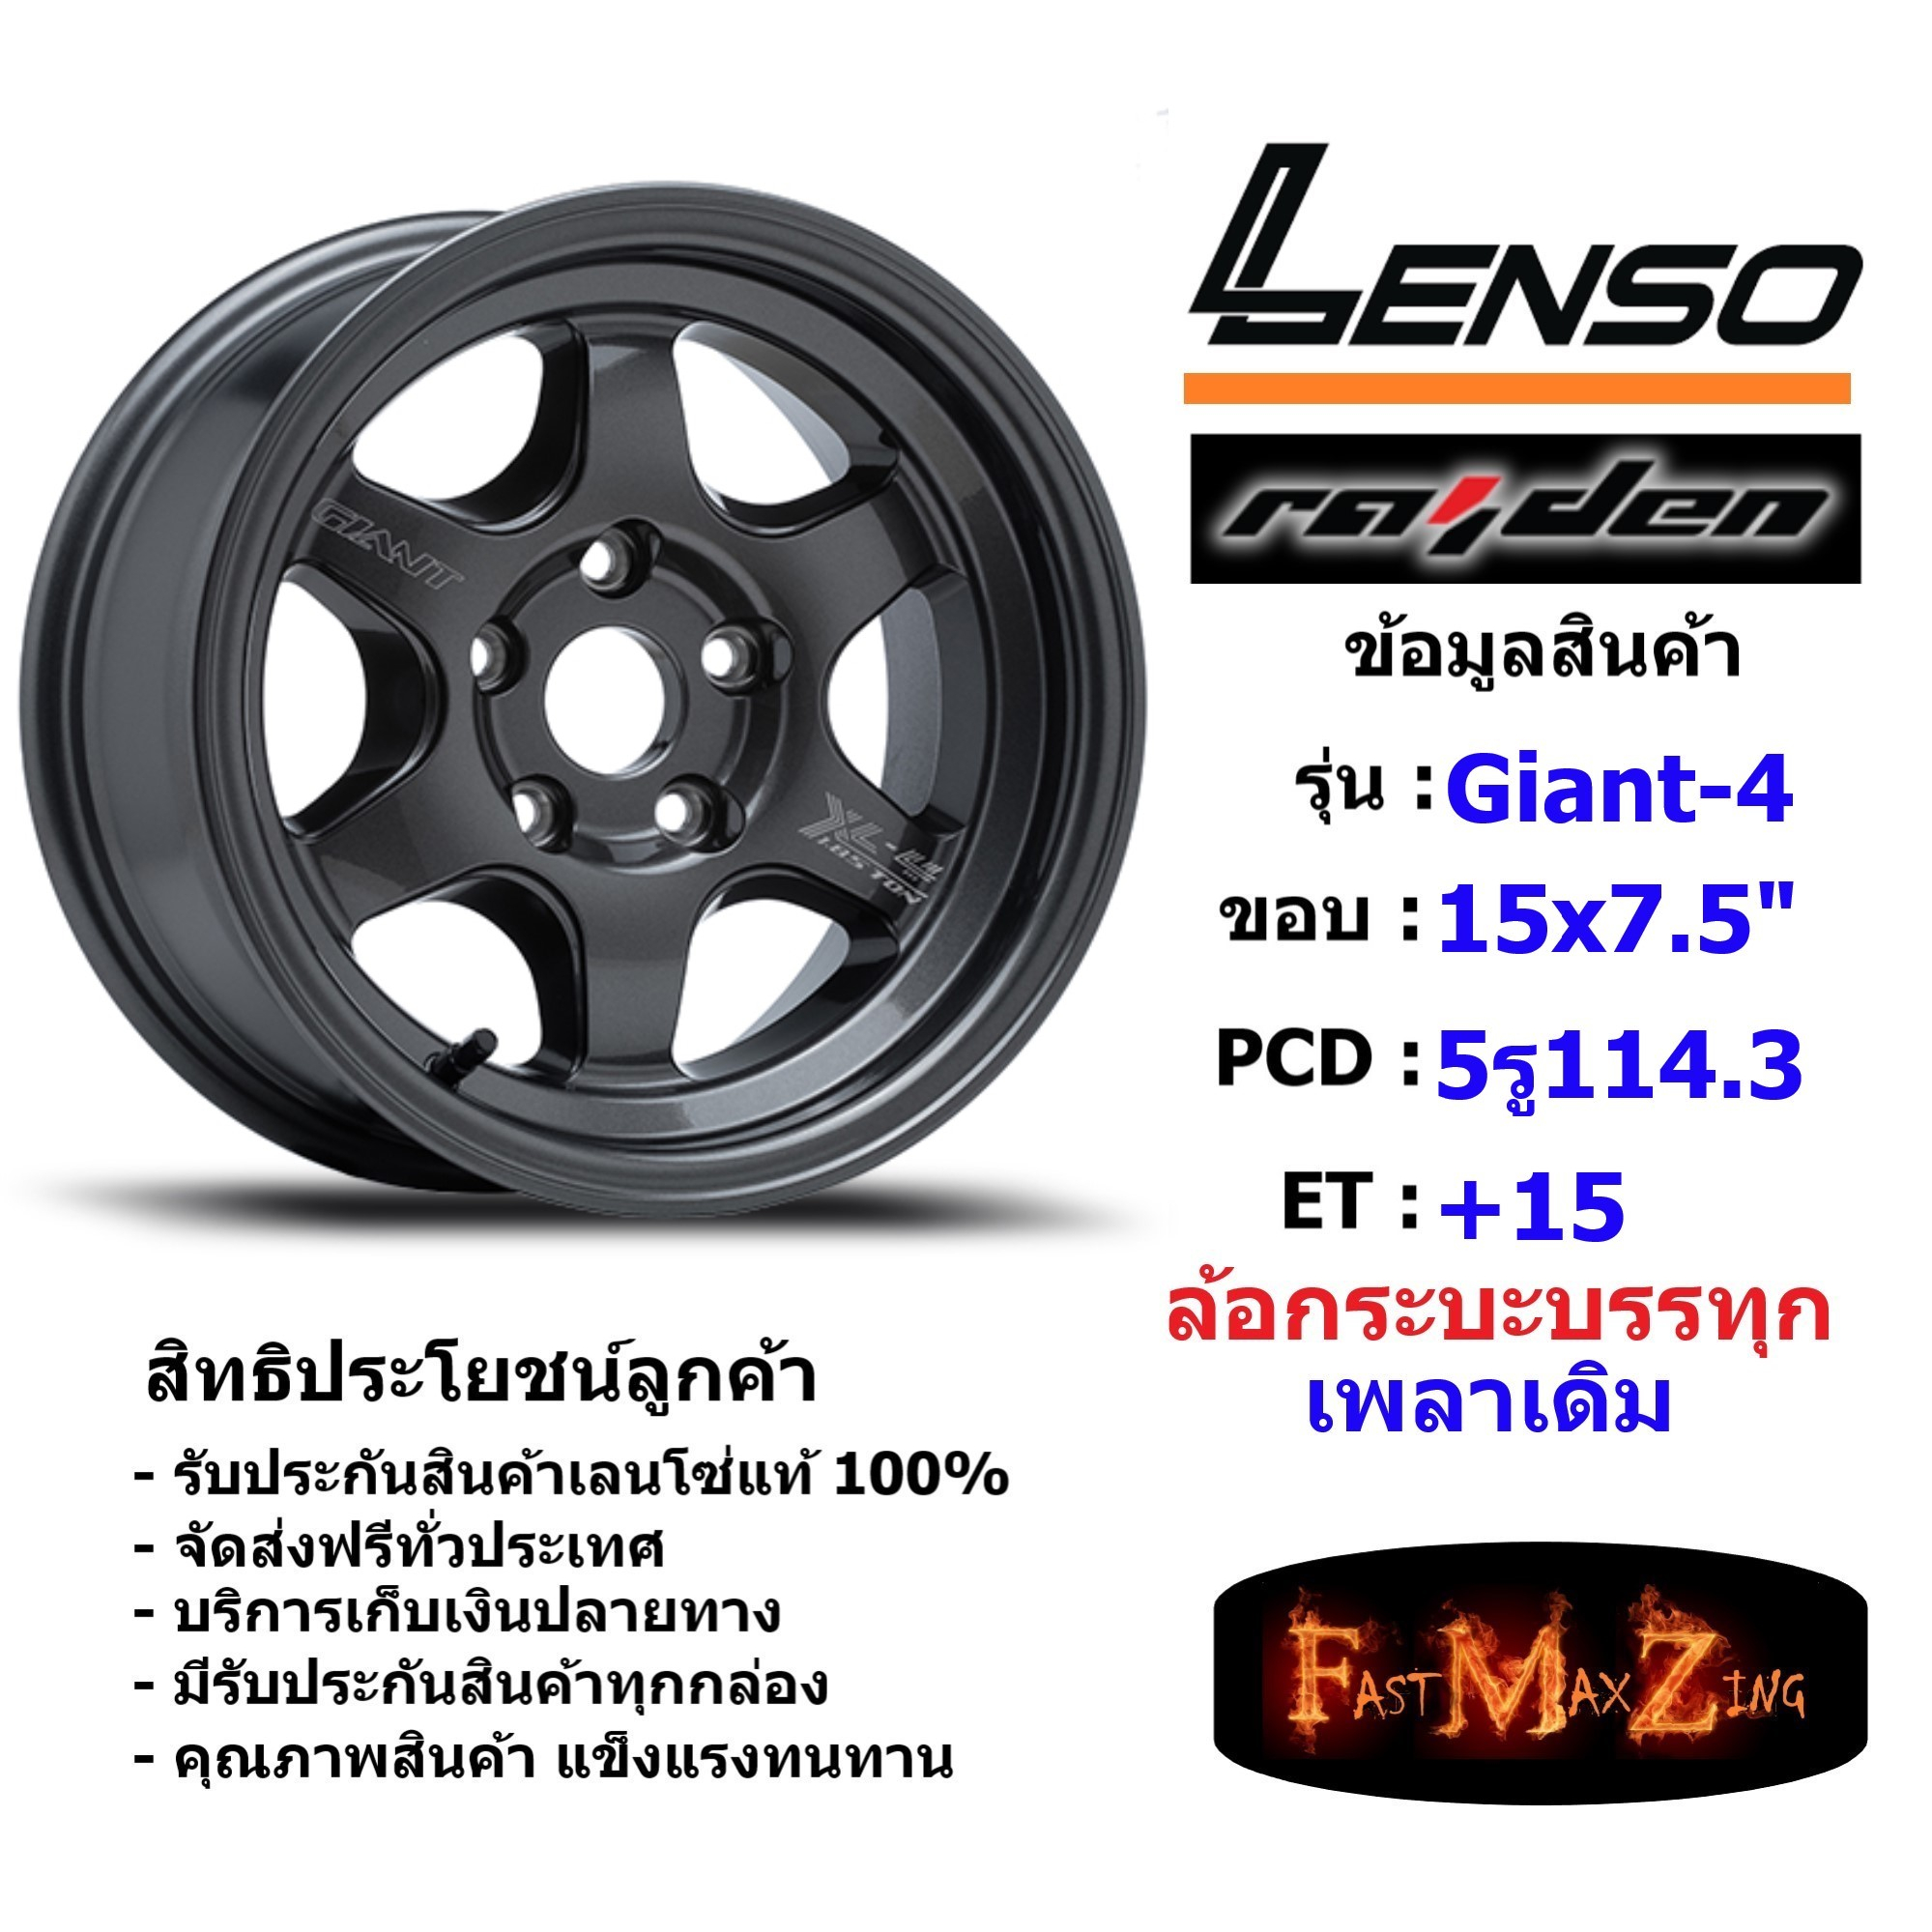 แม็กบรรทุก เพลาเดิม Lenso Wheel GIANT-4 ขอบ 15x7.5" 5รู114.3 ET+15 สีHDW ล้อแม็ก เลนโซ่ lenso15 แม็กขอบ15 CB60